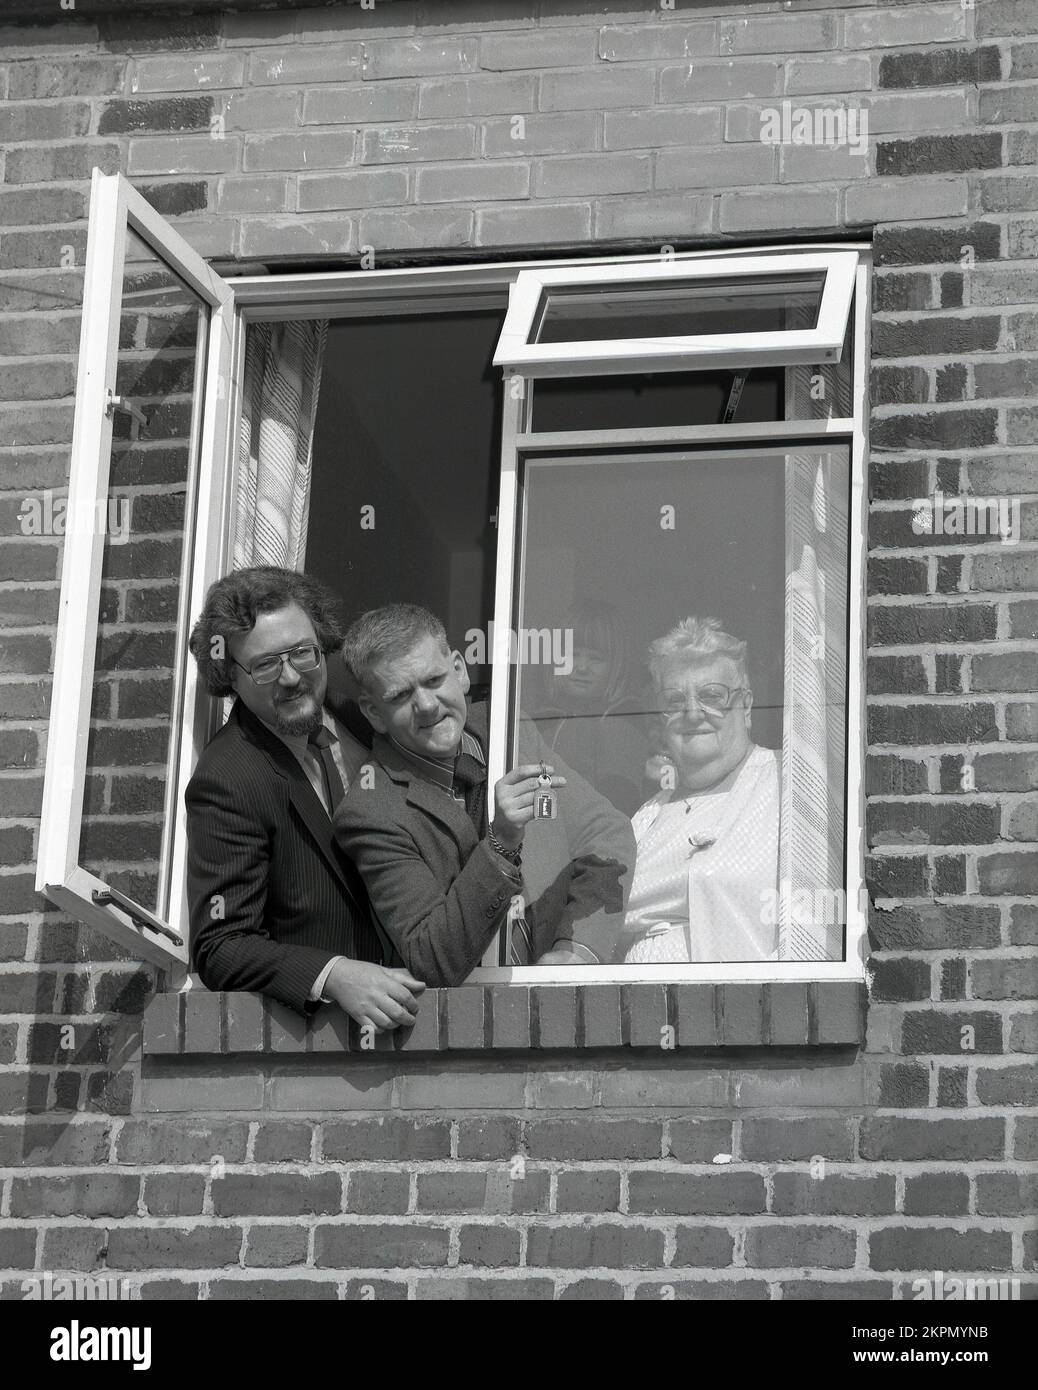 1980s, storico, in piedi con un dirigente ad una finestra di una casa per una foto pubblicitaria, una coppia matura con le chiavi della loro nuova casa, Inghilterra, Regno Unito. Foto Stock